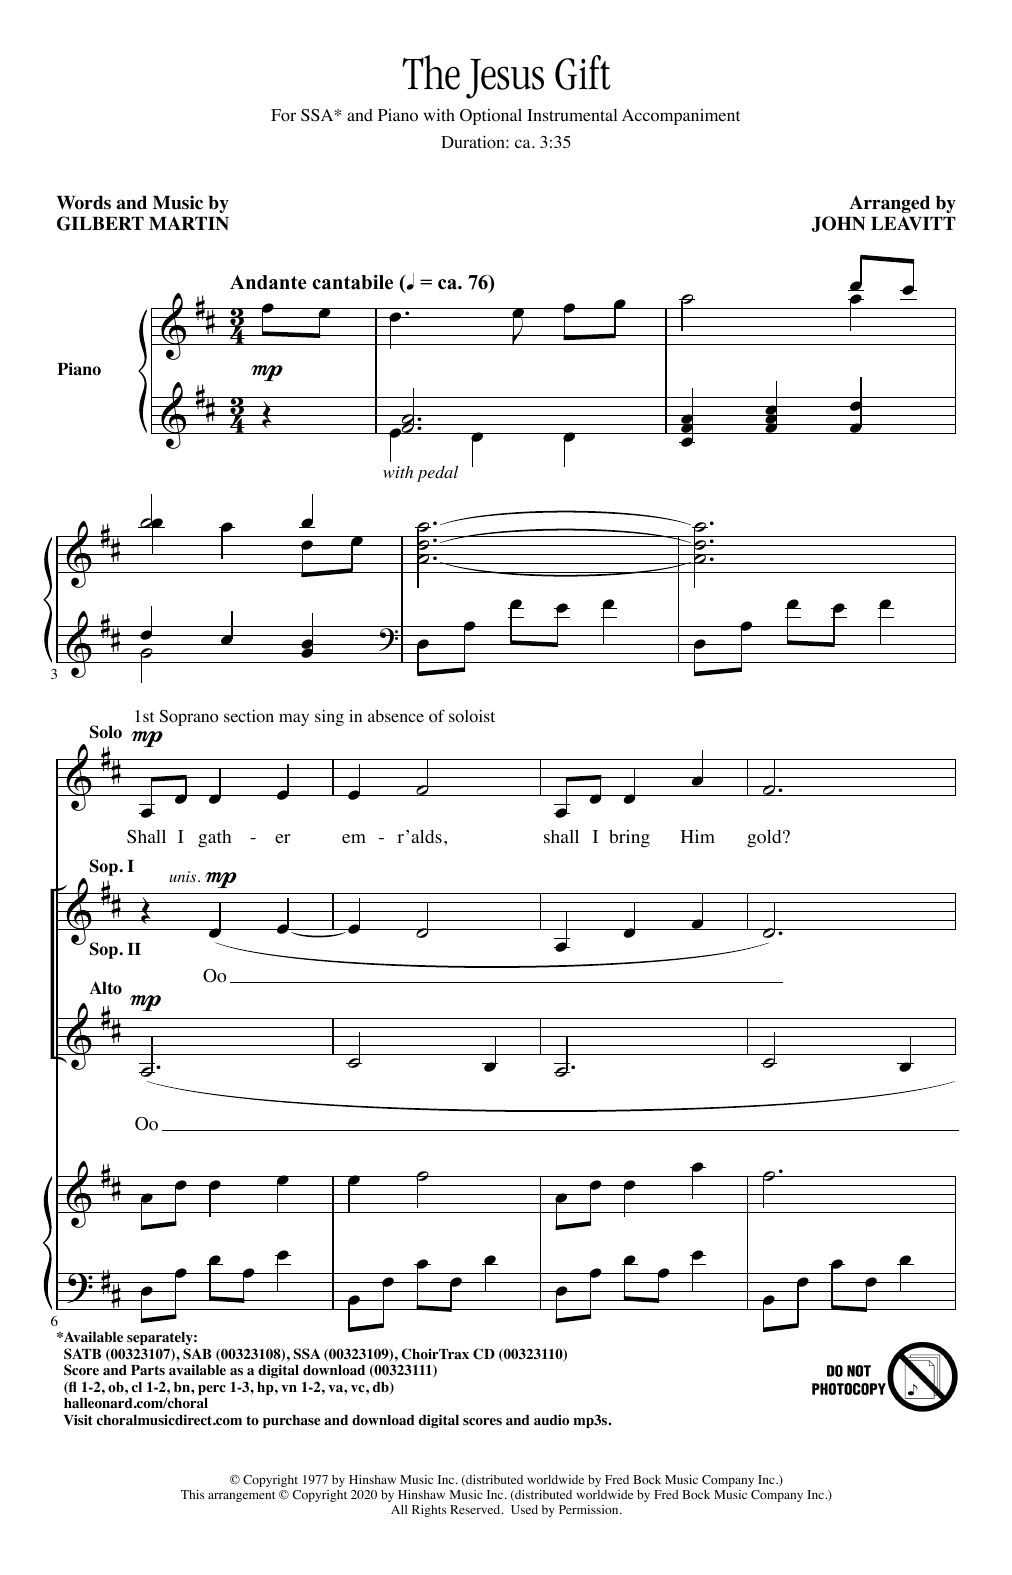 Gilbert Martin The Jesus Gift (arr. John Leavitt) sheet music notes and chords arranged for SAB Choir